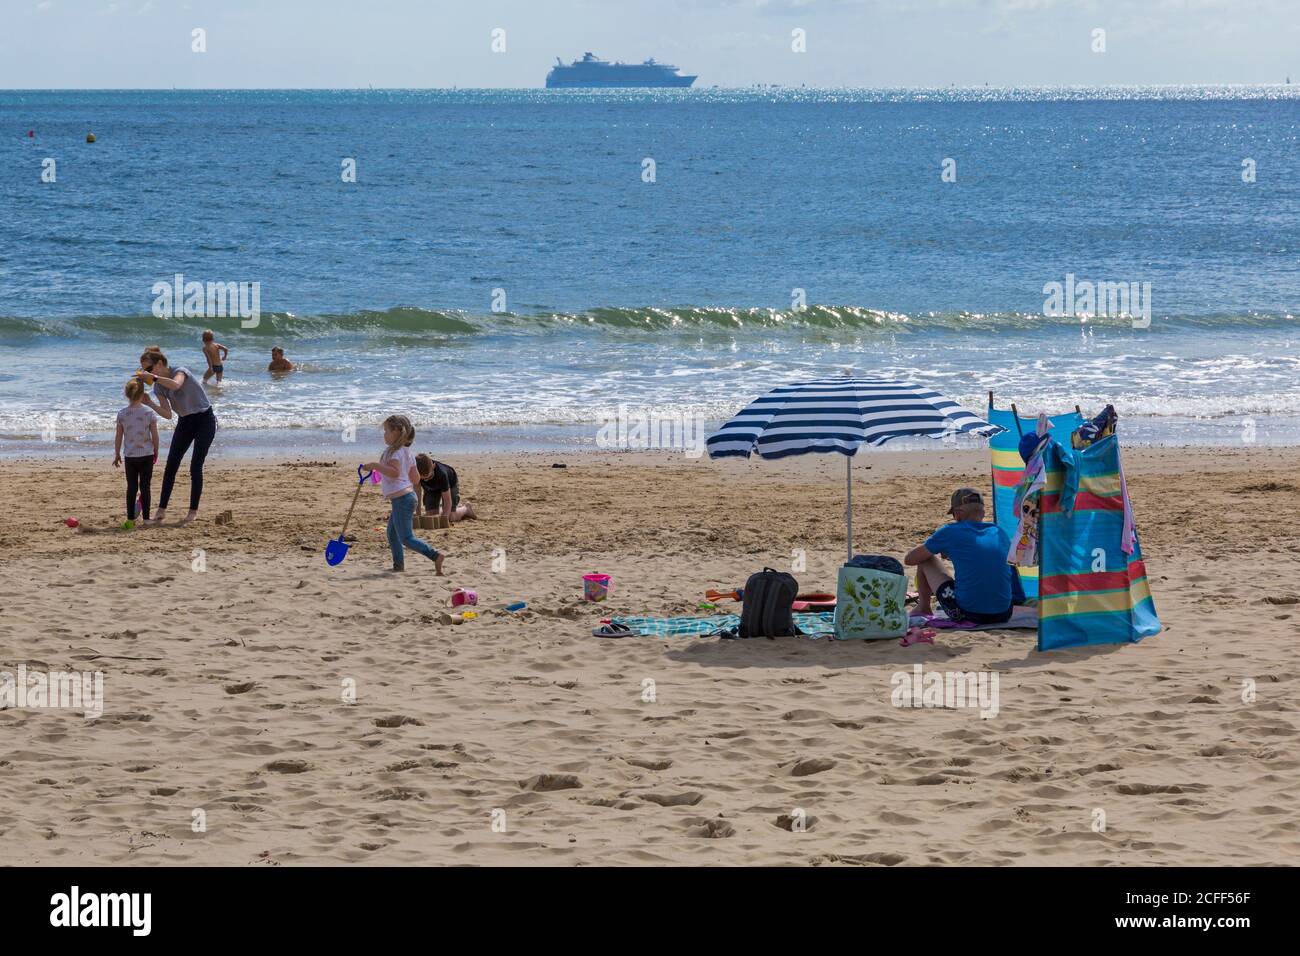 Bournemouth, Dorset, Royaume-Uni. 5 septembre 2020. Météo au Royaume-Uni : les plages de Bournemouth sont ensoleillées, tandis que les amateurs de plage se dirigent vers le bord de mer pour profiter du soleil. Crédit : Carolyn Jenkins/Alay Live News Banque D'Images